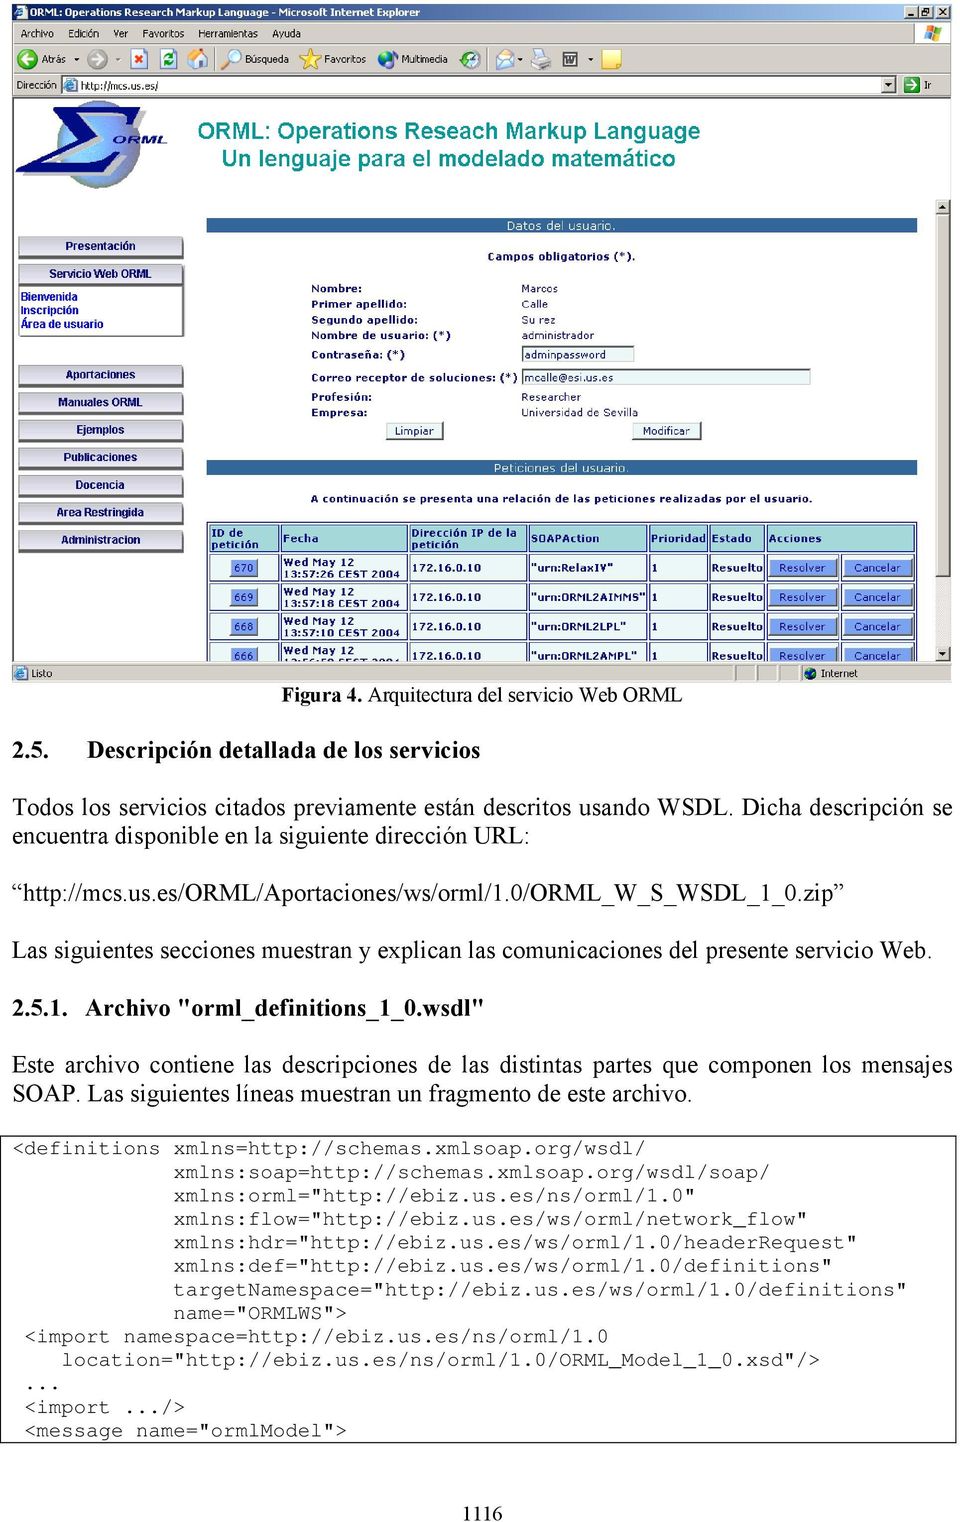 zip Las siguientes secciones muestran y explican las comunicaciones del presente servicio Web. 2.5.1. Archivo "orml_definitions_1_0.